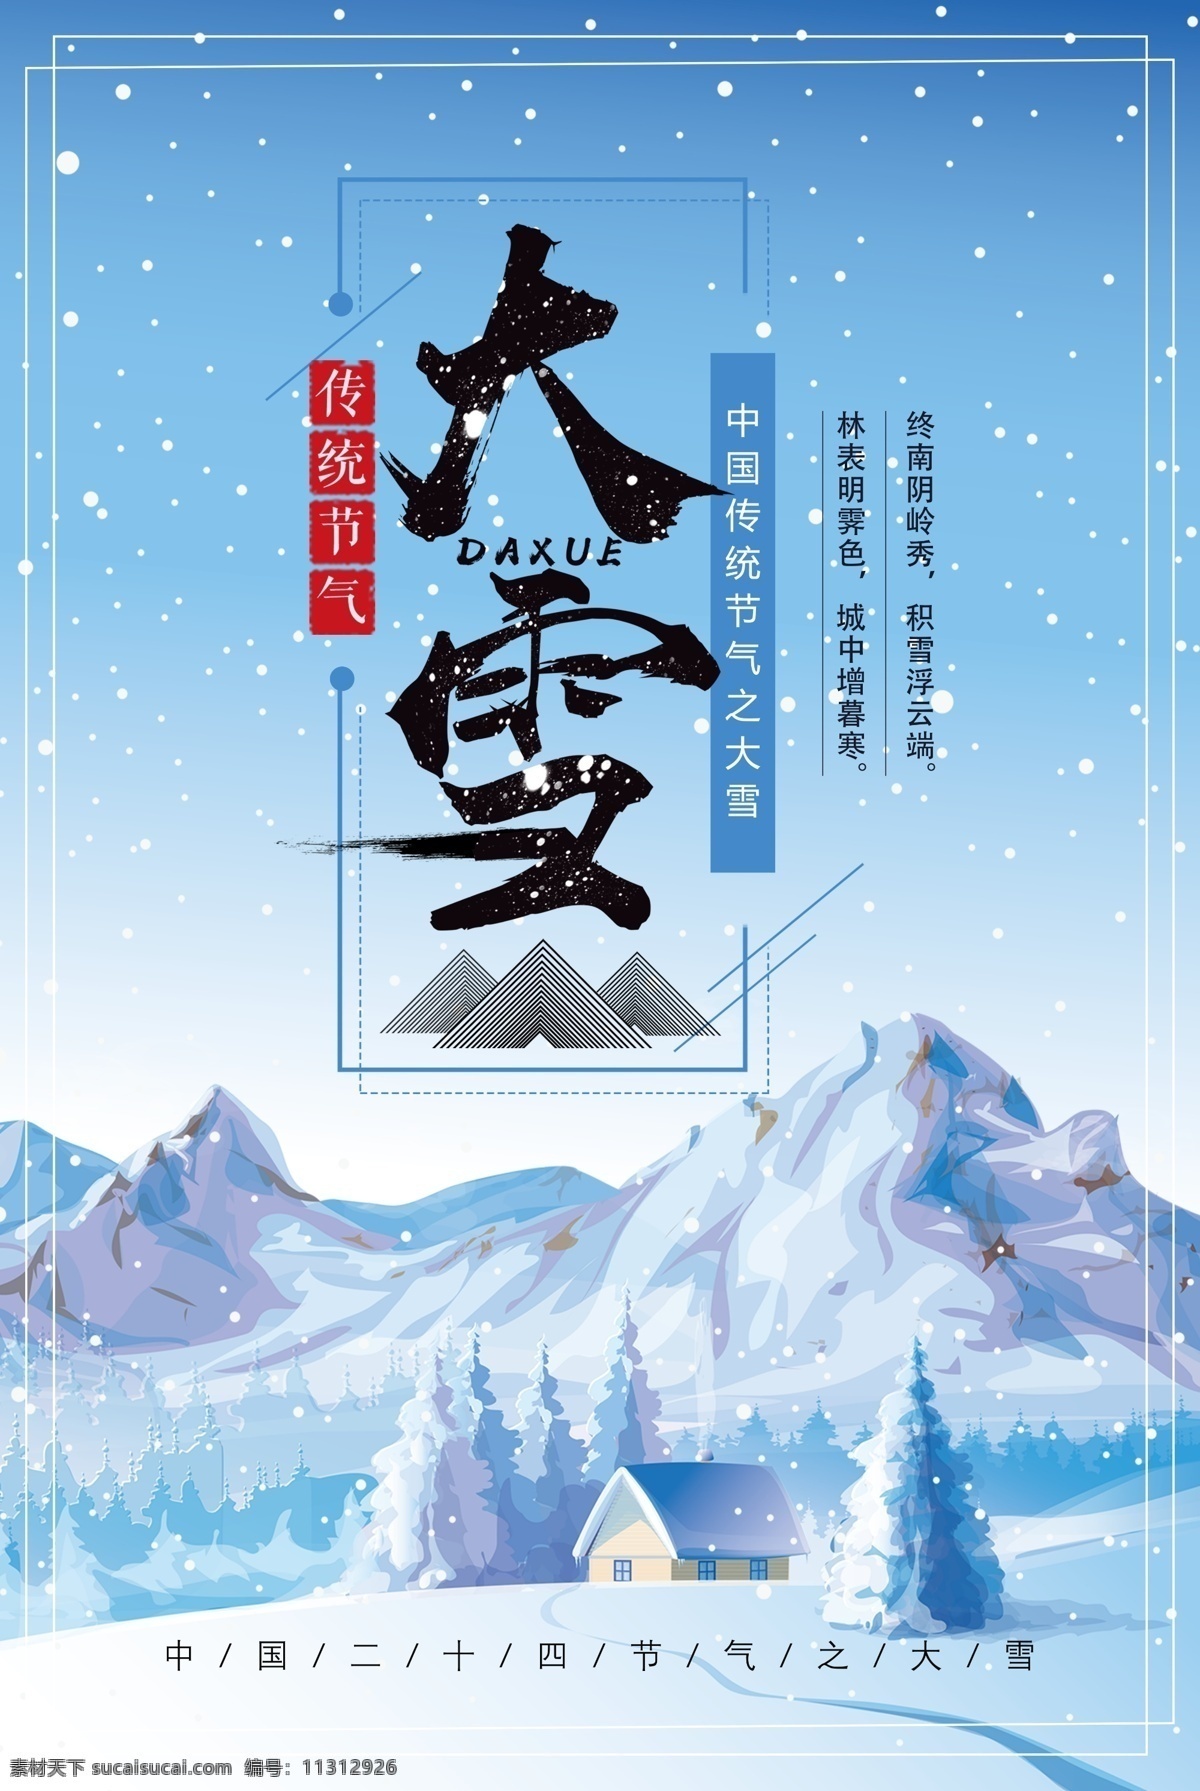 创意 唯美 二十四节气 大雪 宣传海报 中国 传统 卡通插画 飘雪 蓝色画风